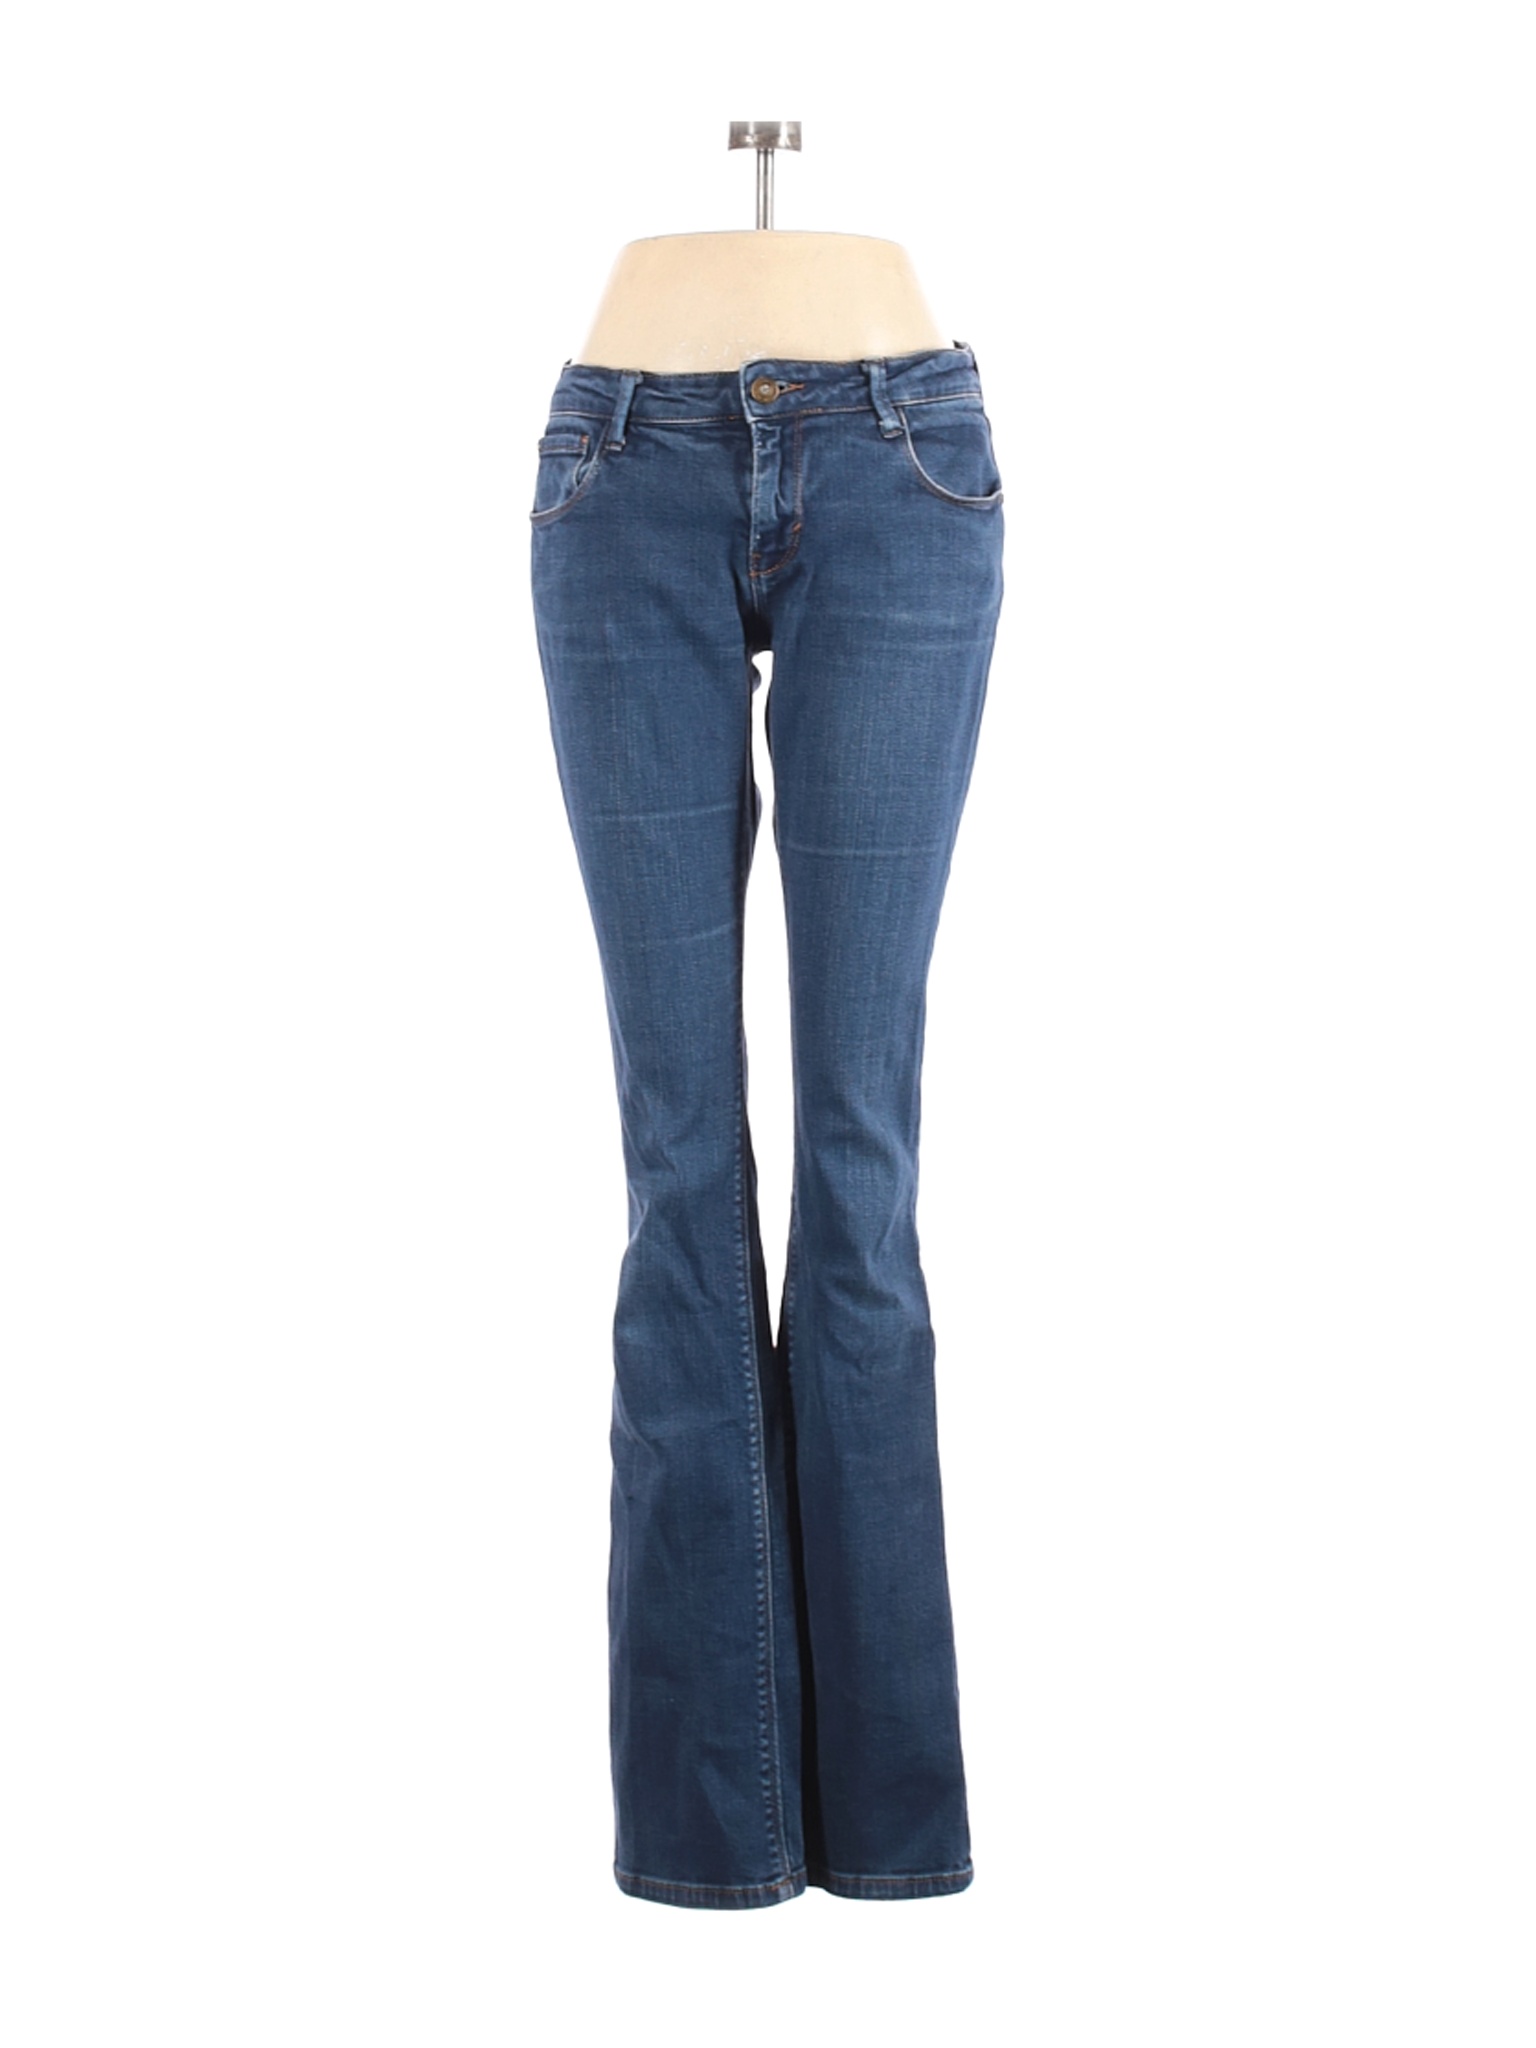 Zara Women Blue Jeans 6 | eBay